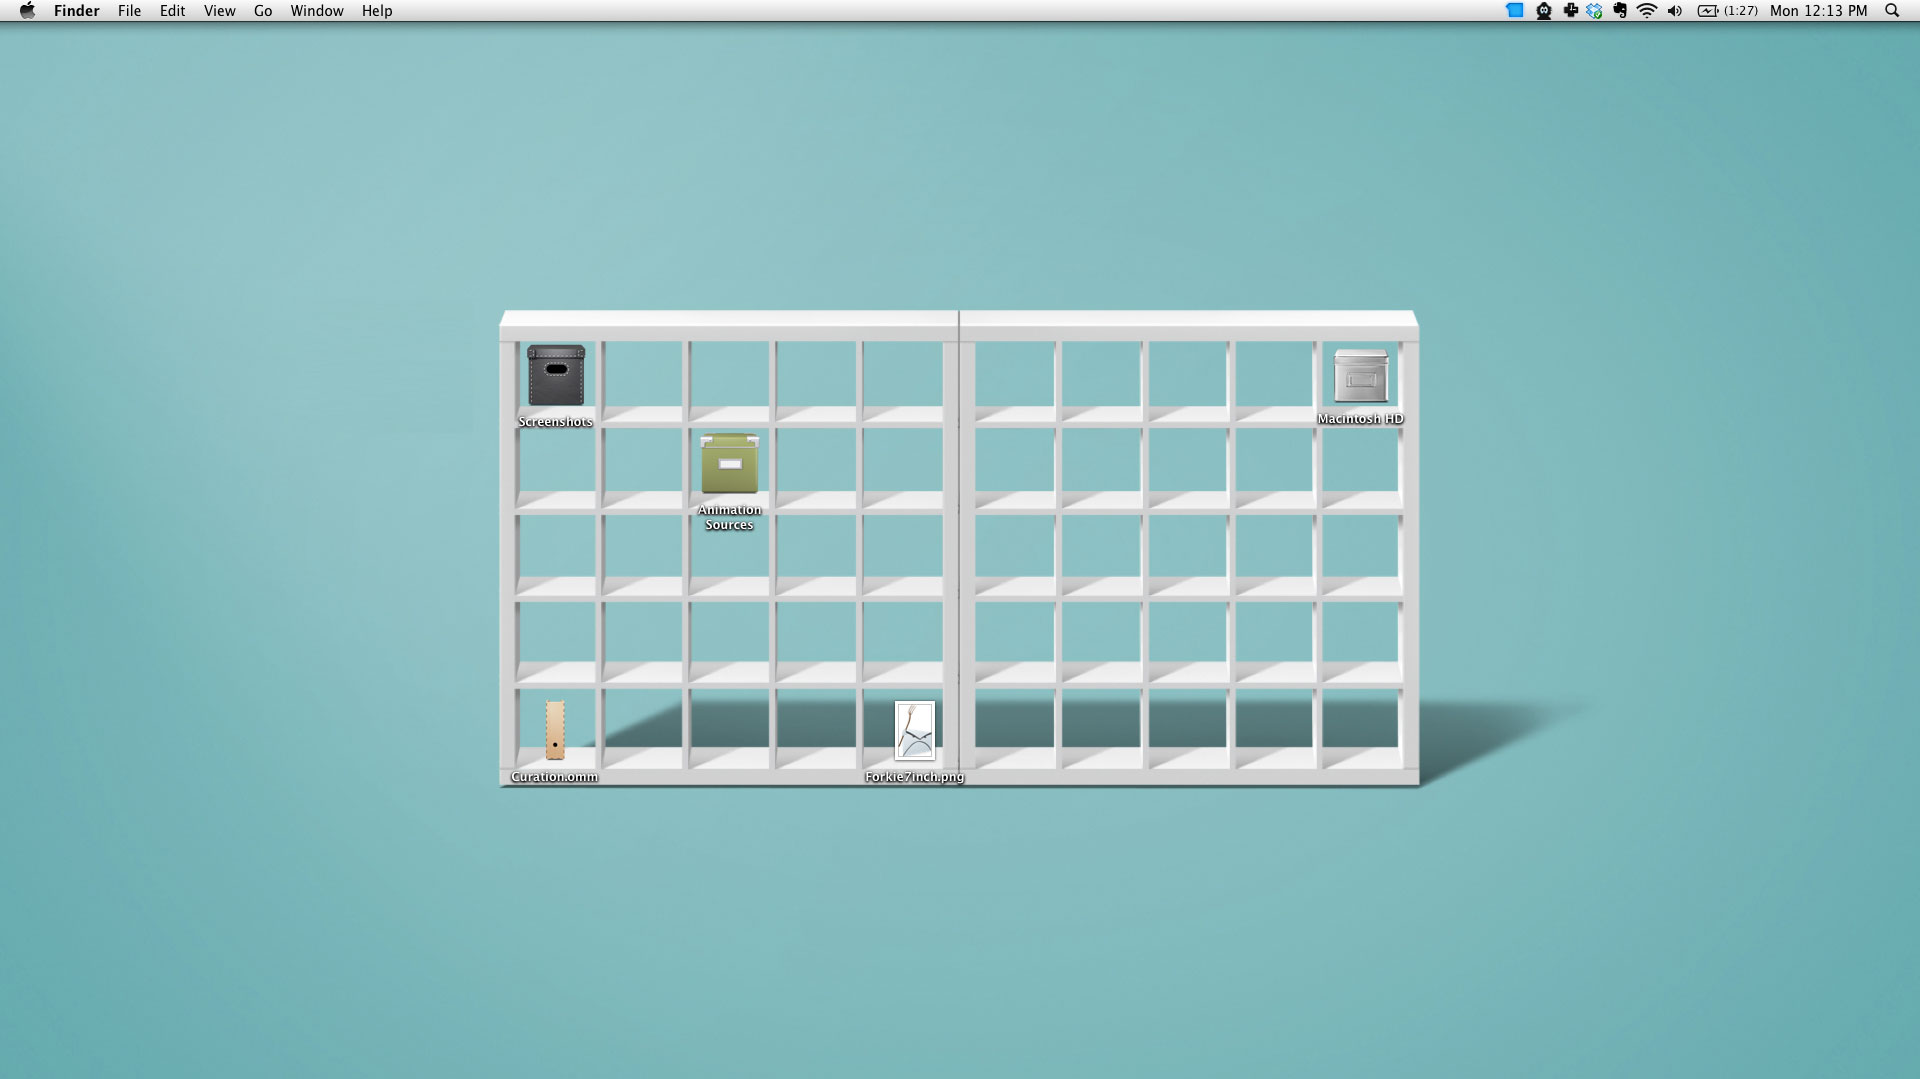 Aesthetic Desktop Wallpaper for Organizing Work School - Etsy